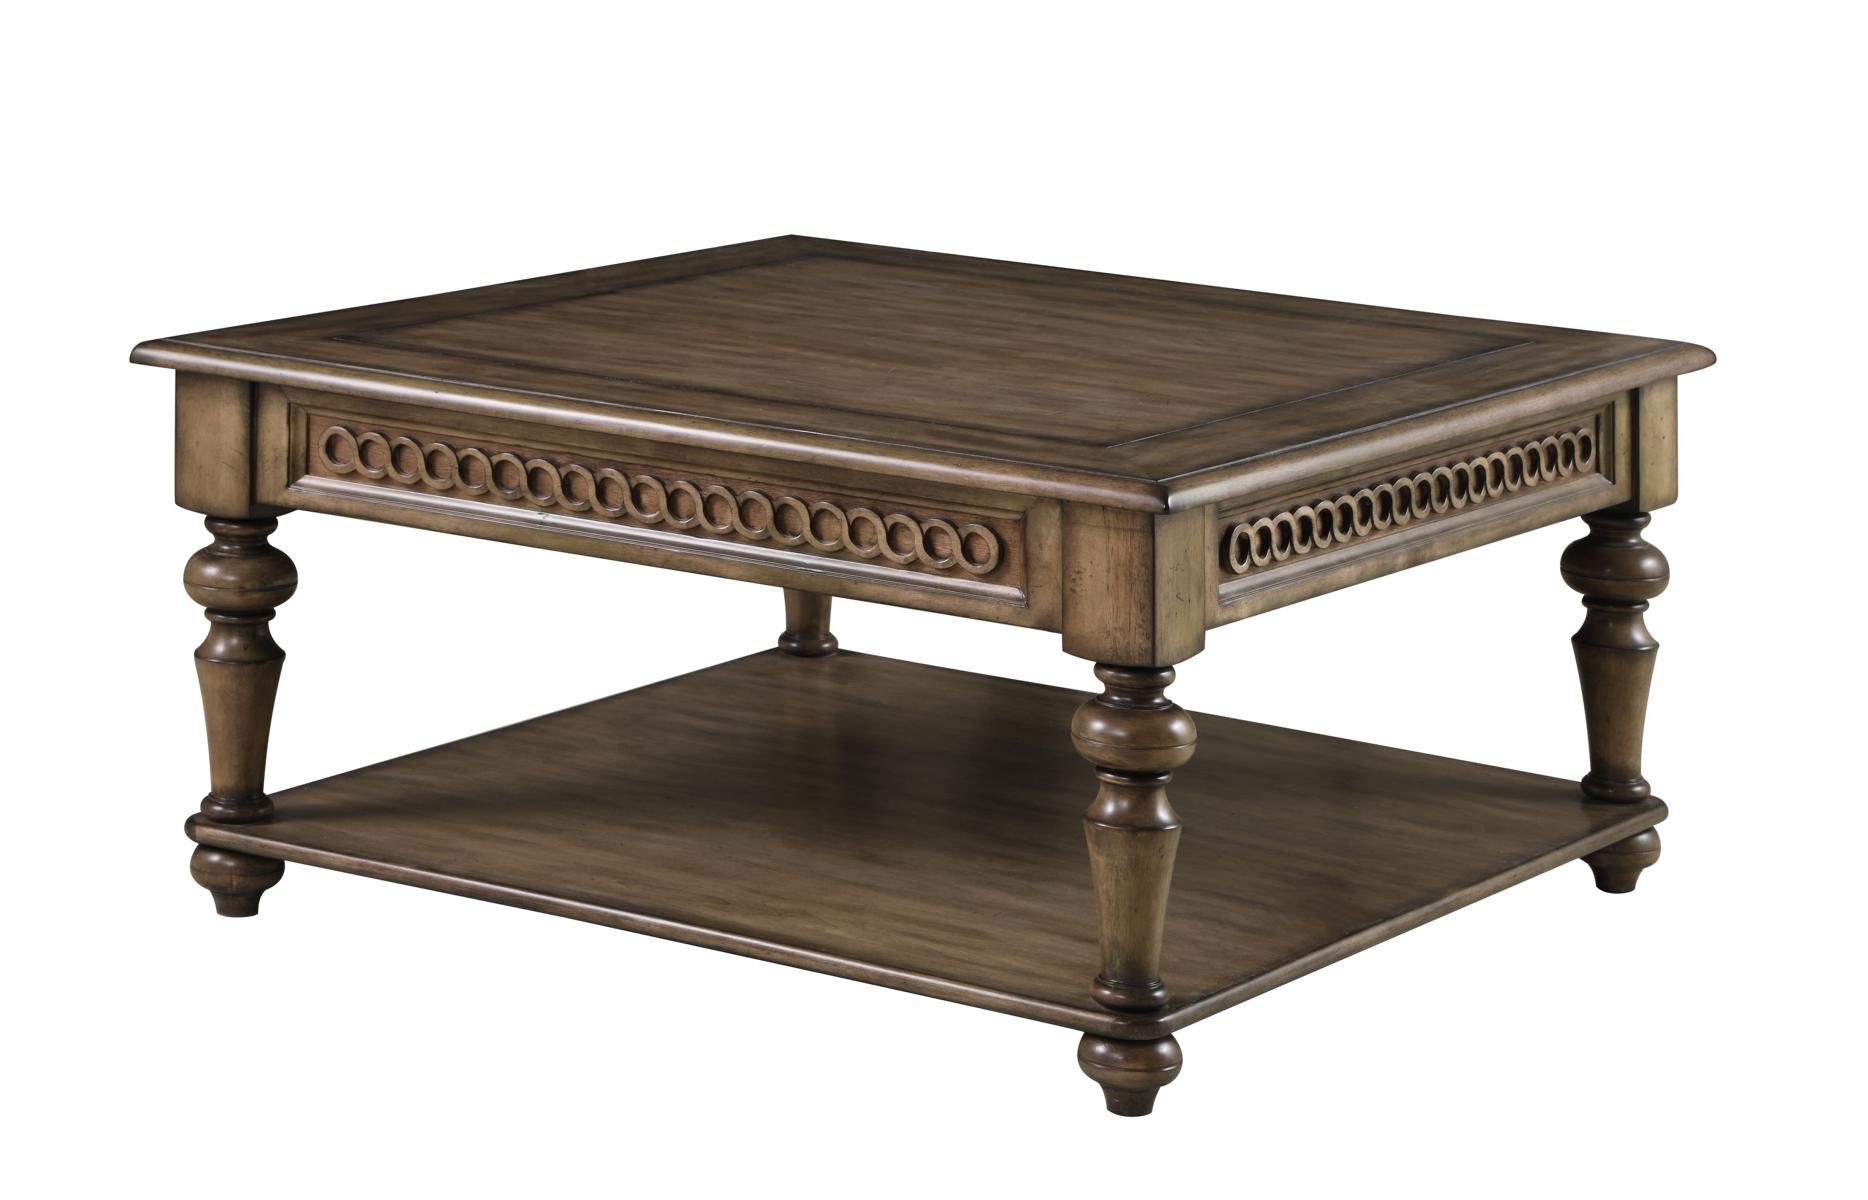 JVmoebel Couchtisch, Klassischer Couchtisch Holztisch Beistelltisch Tische Wohnzimmer Holz